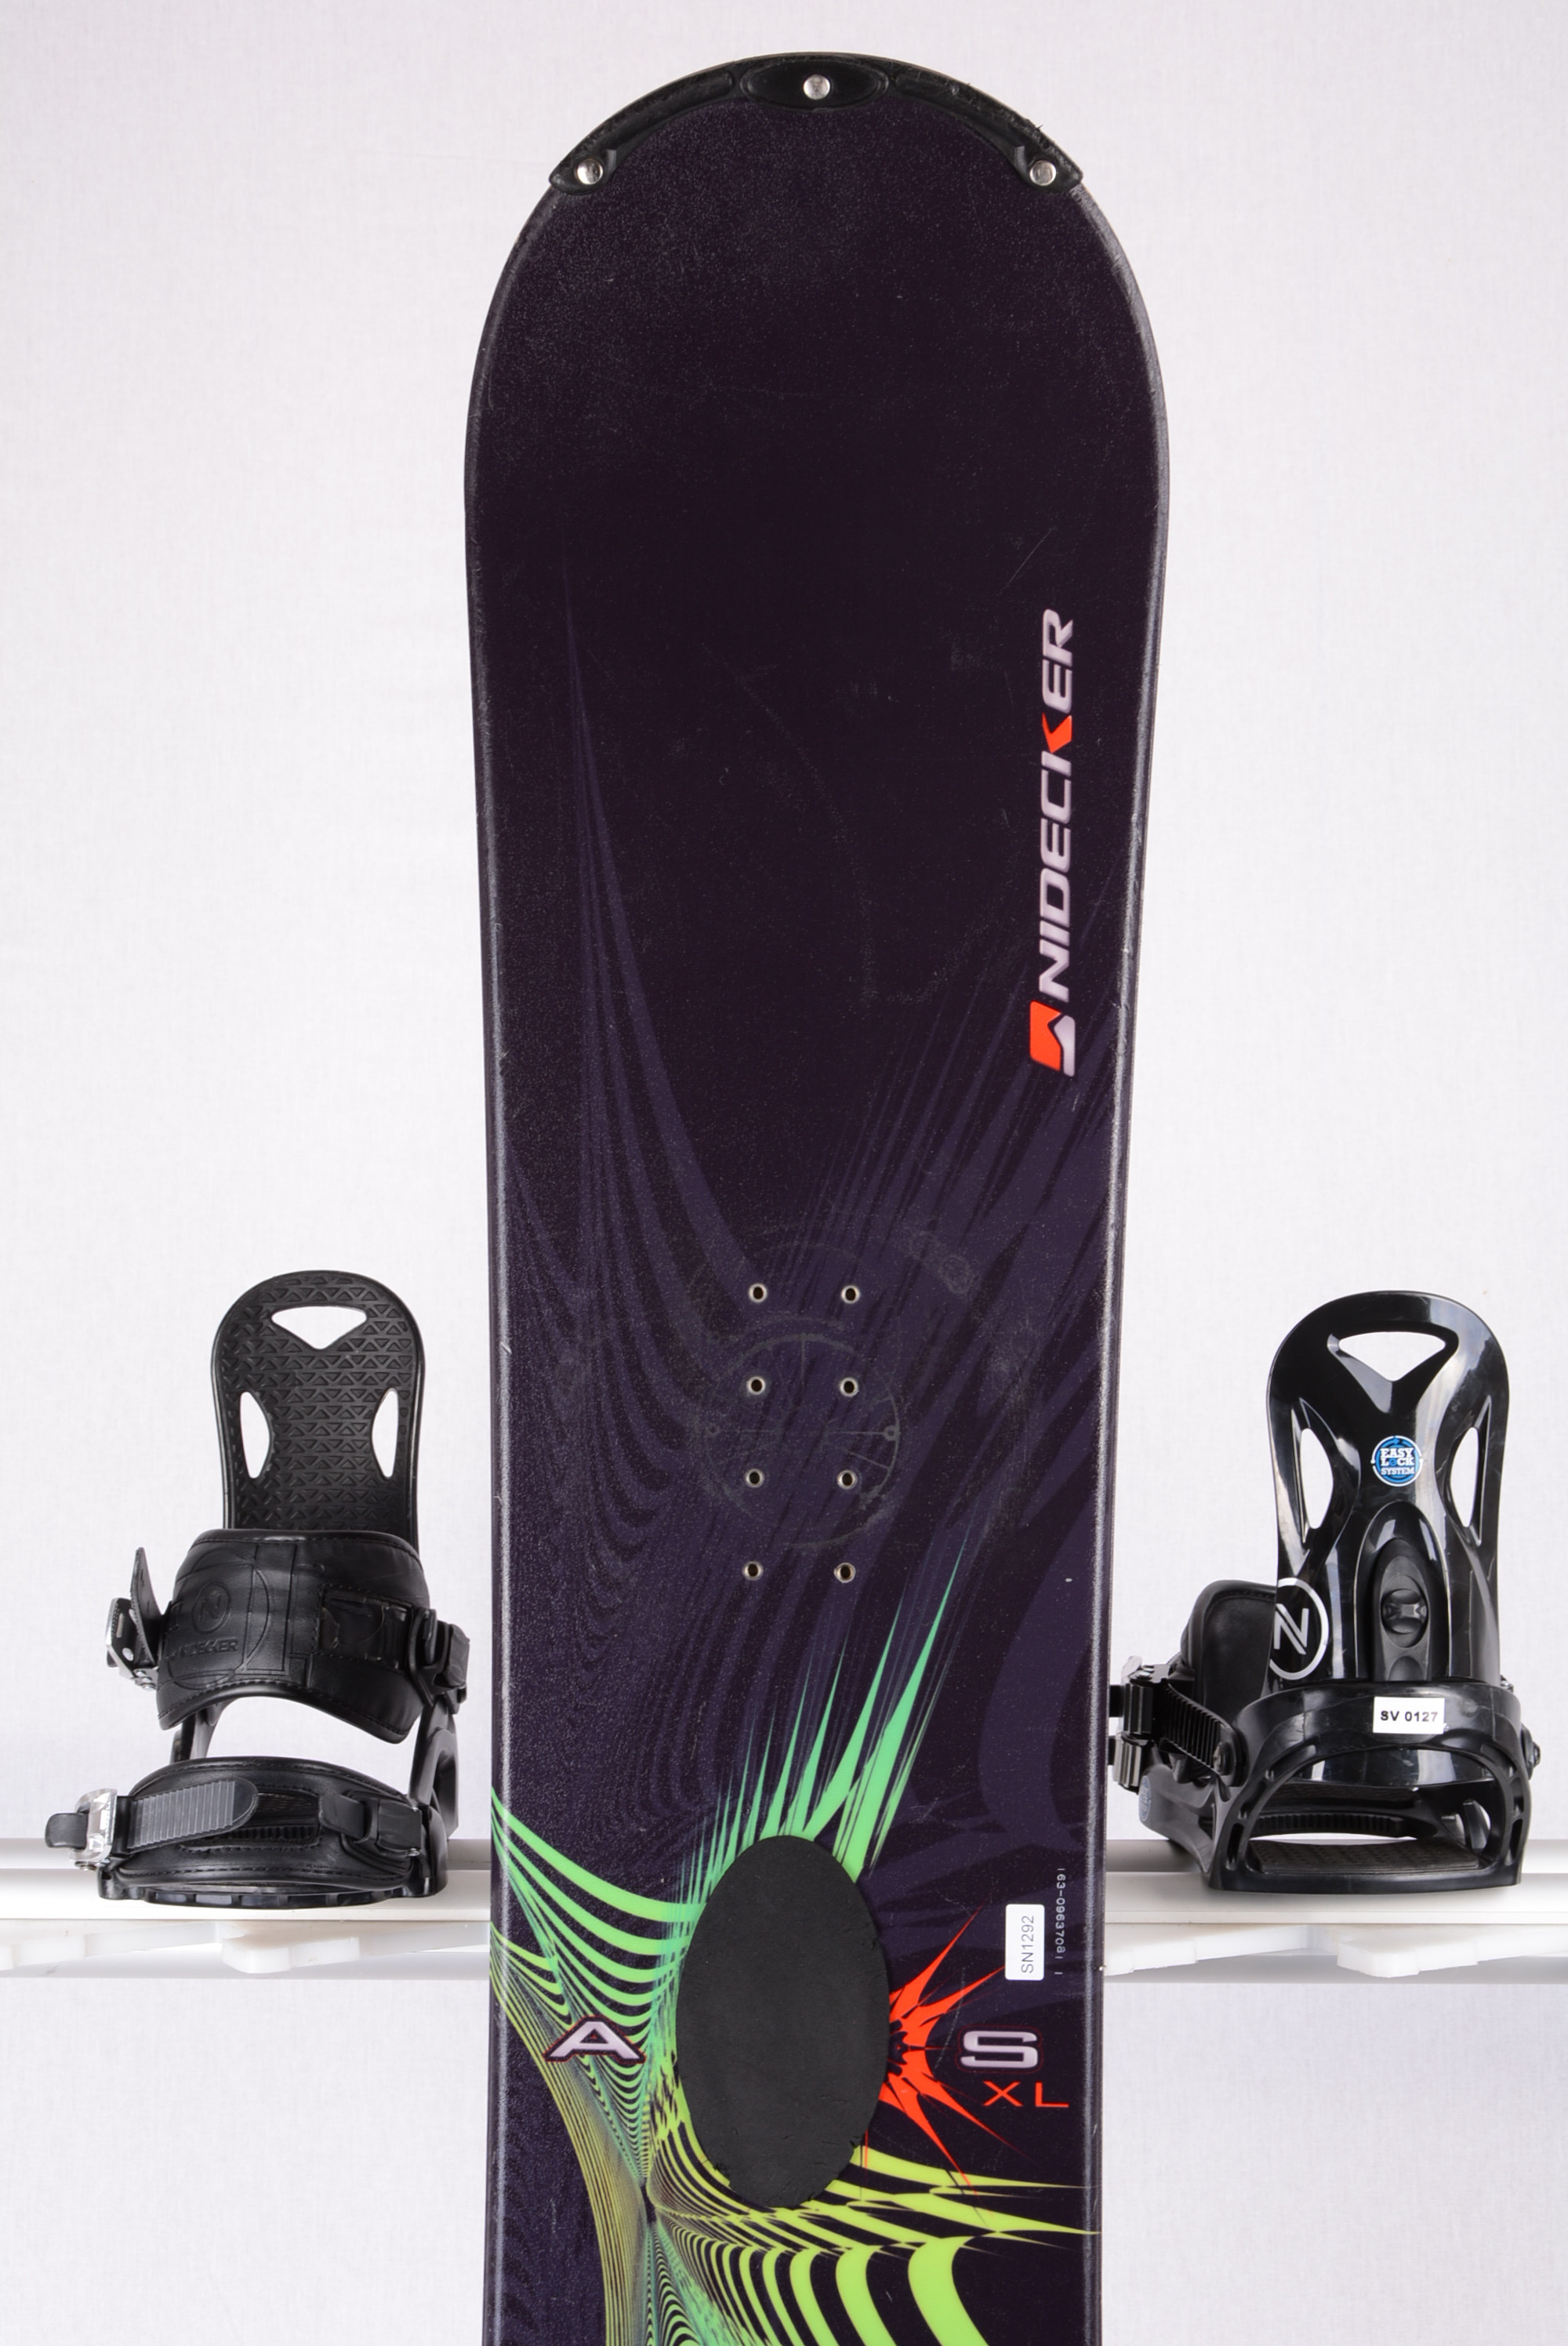 salami schudden verslag doen van snowboard NIDECKER AXIS, BLACK/blue, SWISS made, WOODCORE, sidewall, CAMBER  - Mardosport.ch